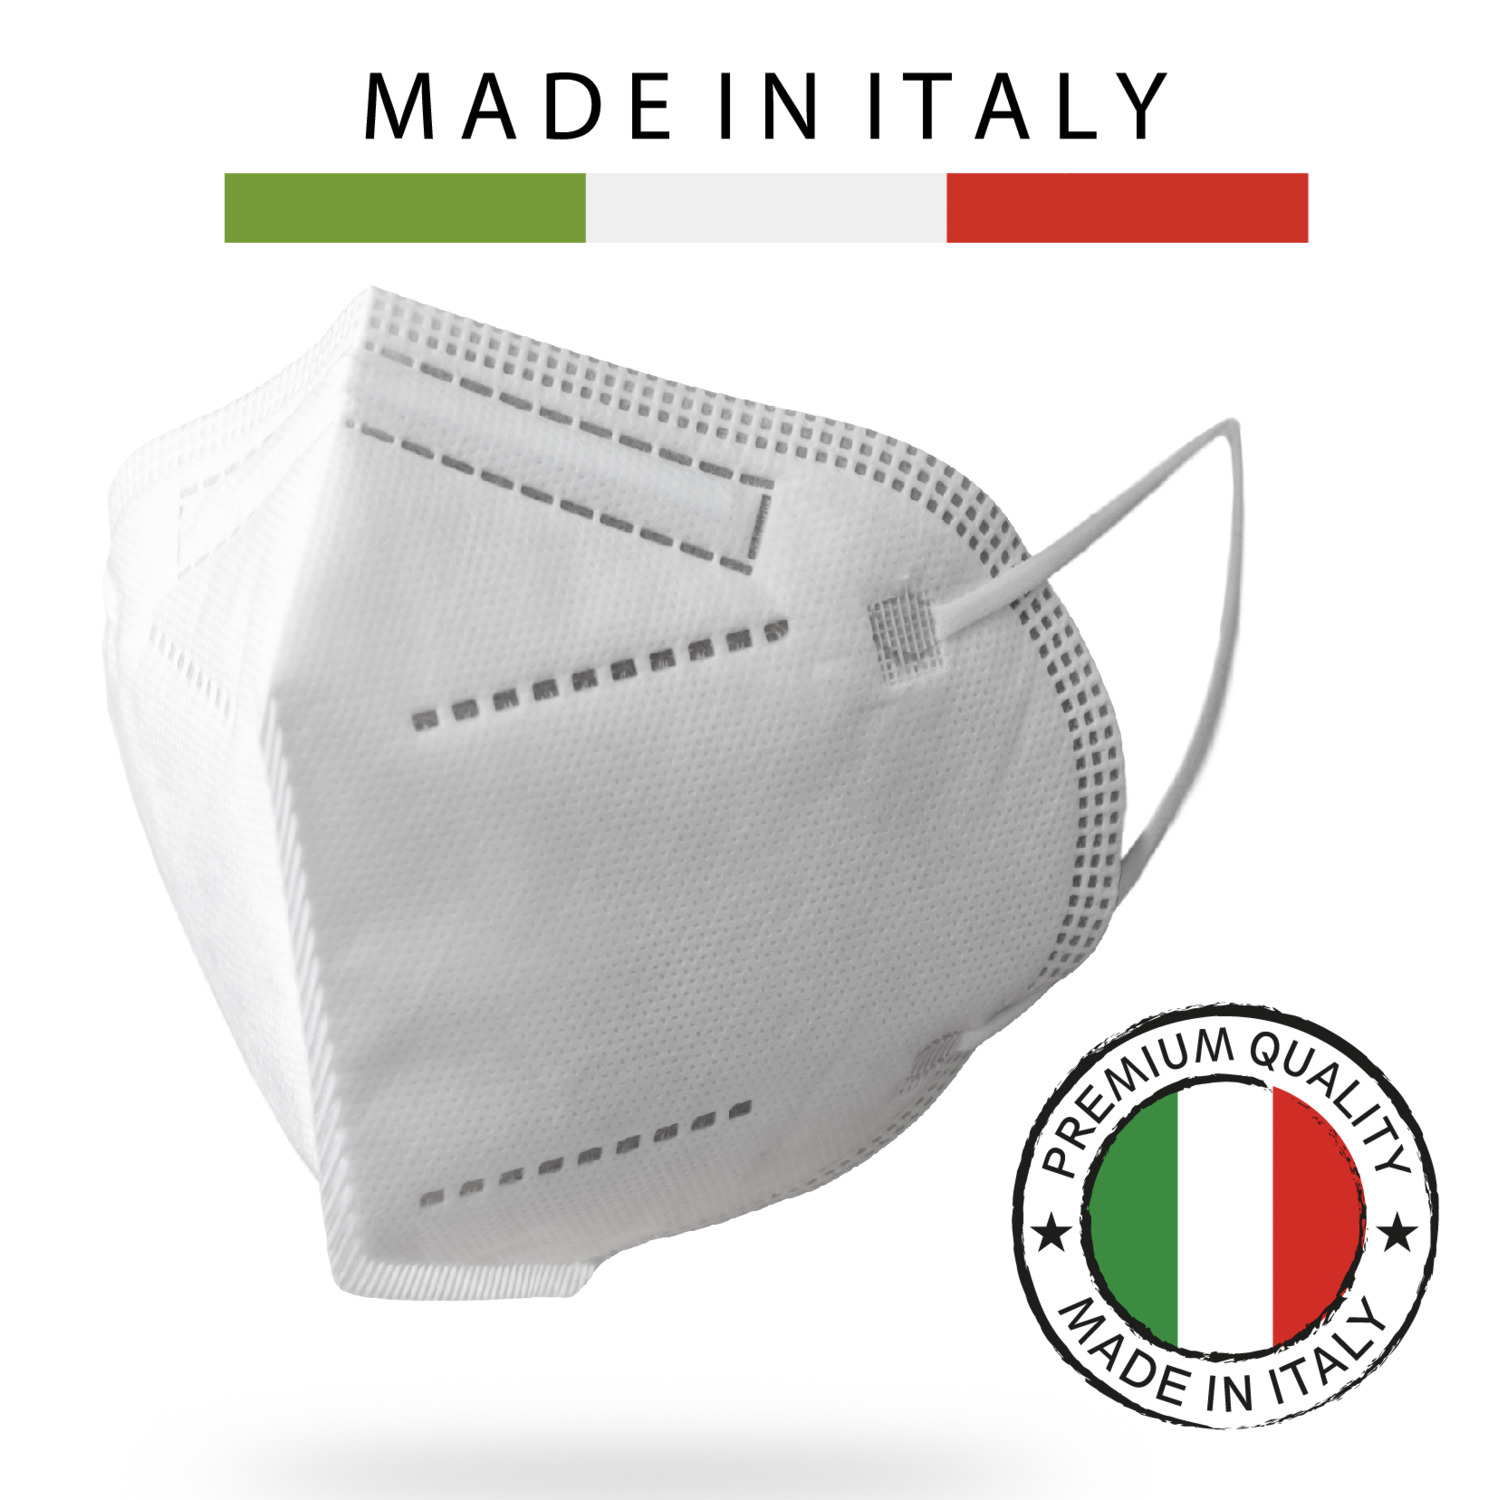 20 pz FFP2 Protettiva, 100% Made In Italy, Super Filtrante